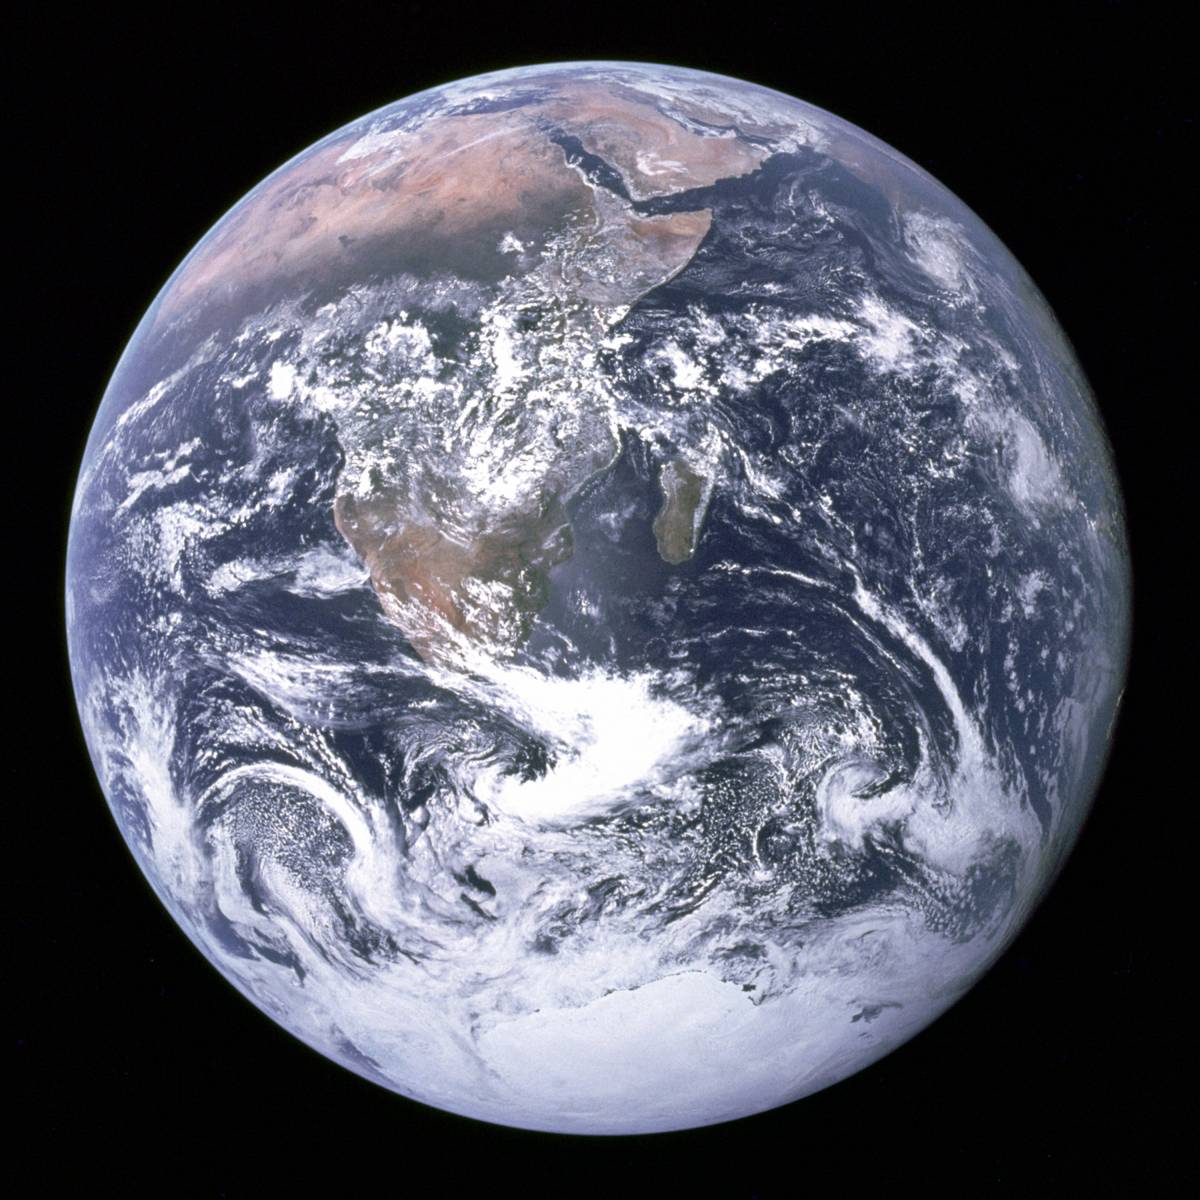 Apollo Earth photo